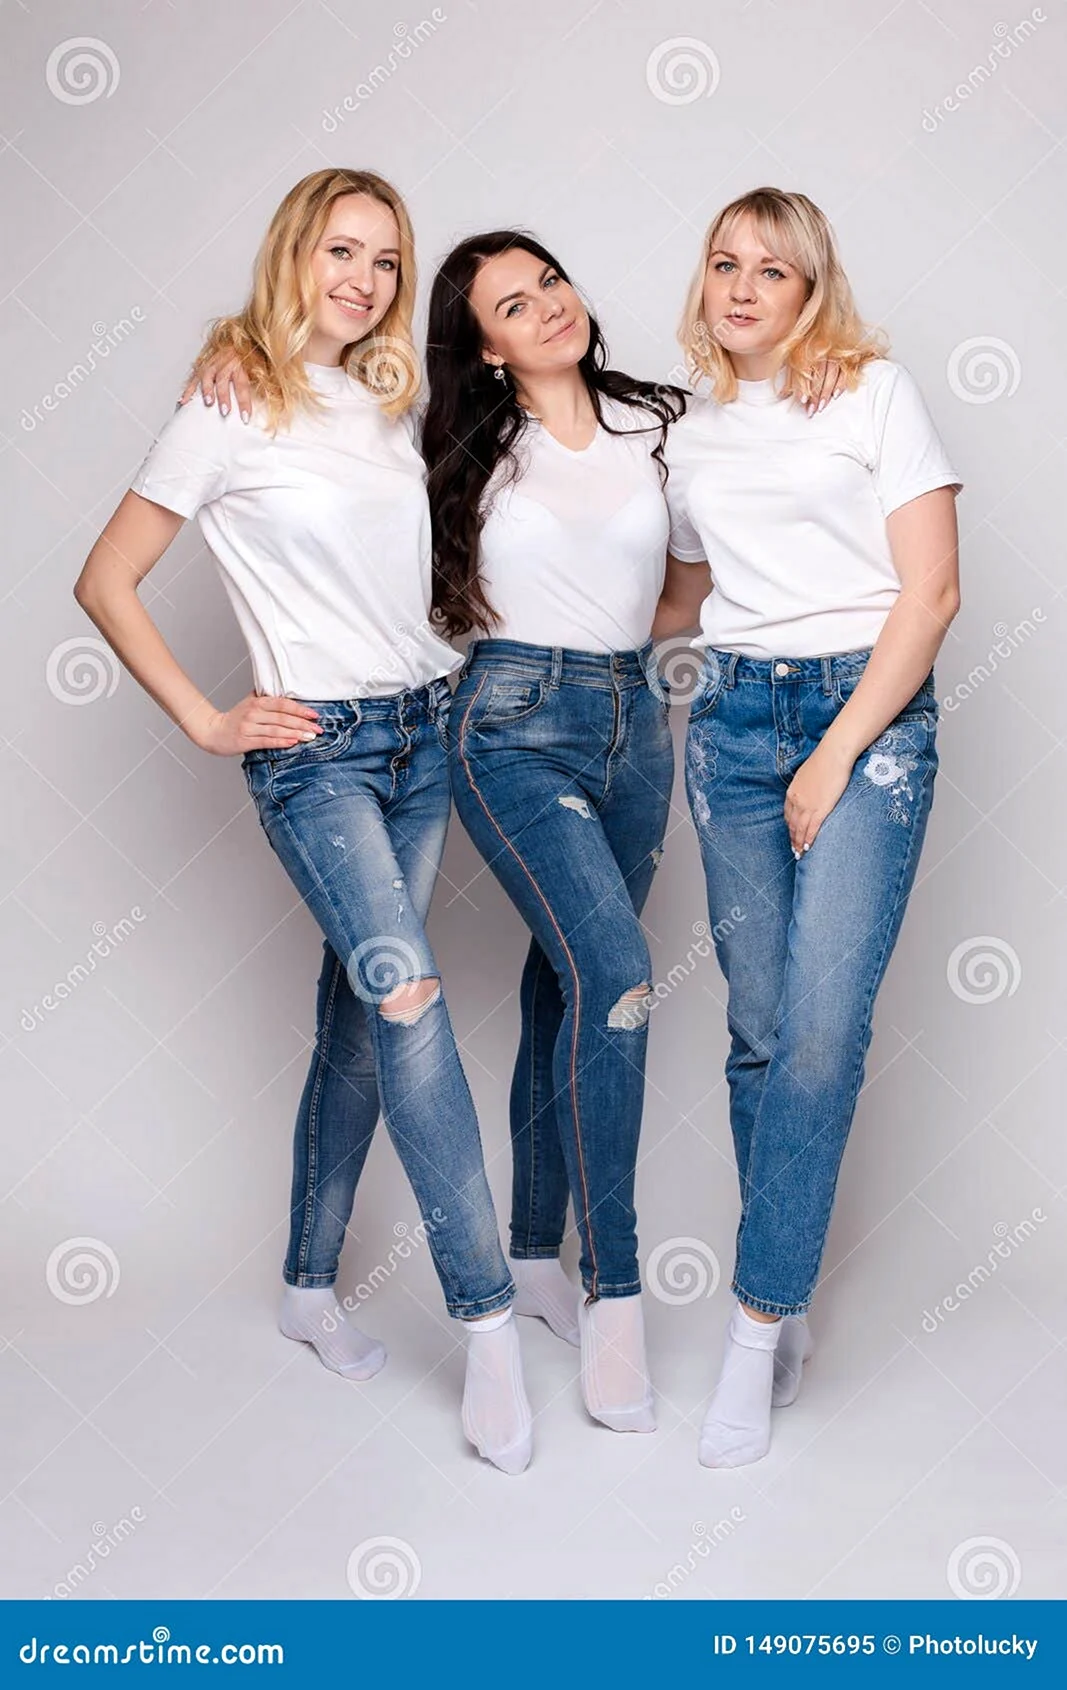 Фотосессия белый верх и джинсы